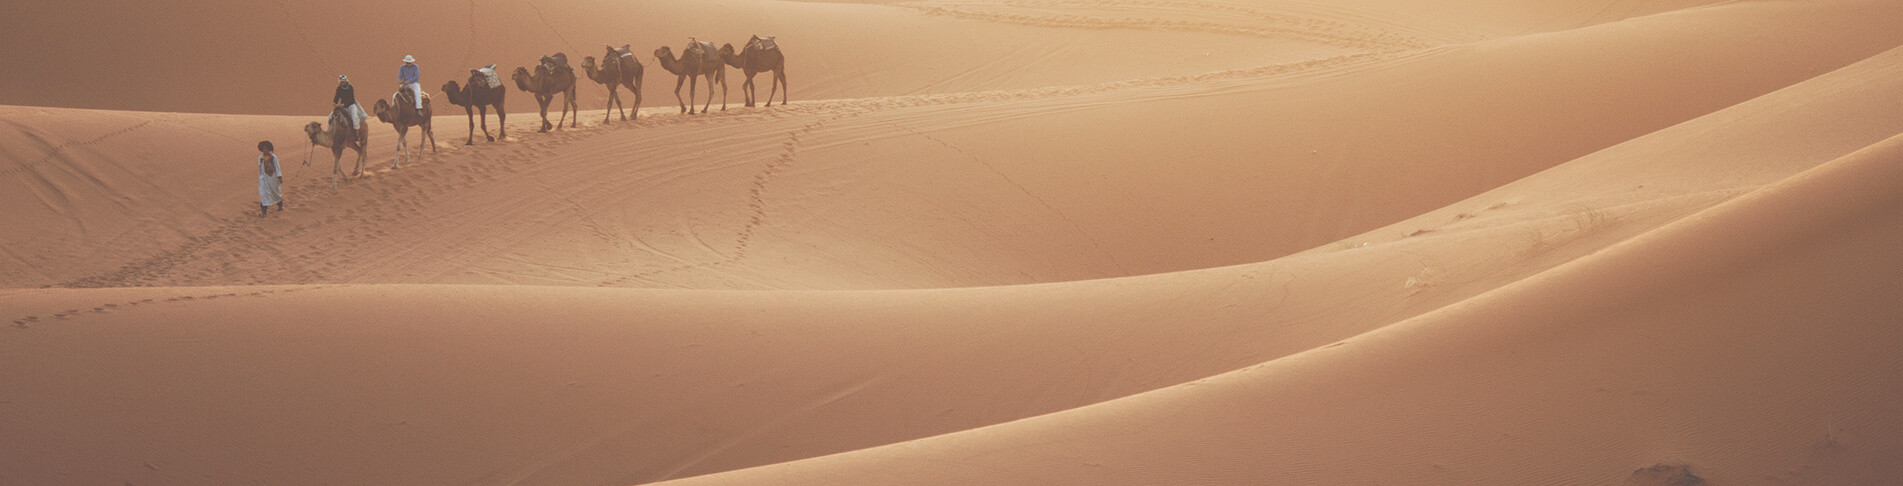 Marokko Urlaub in der Wüste